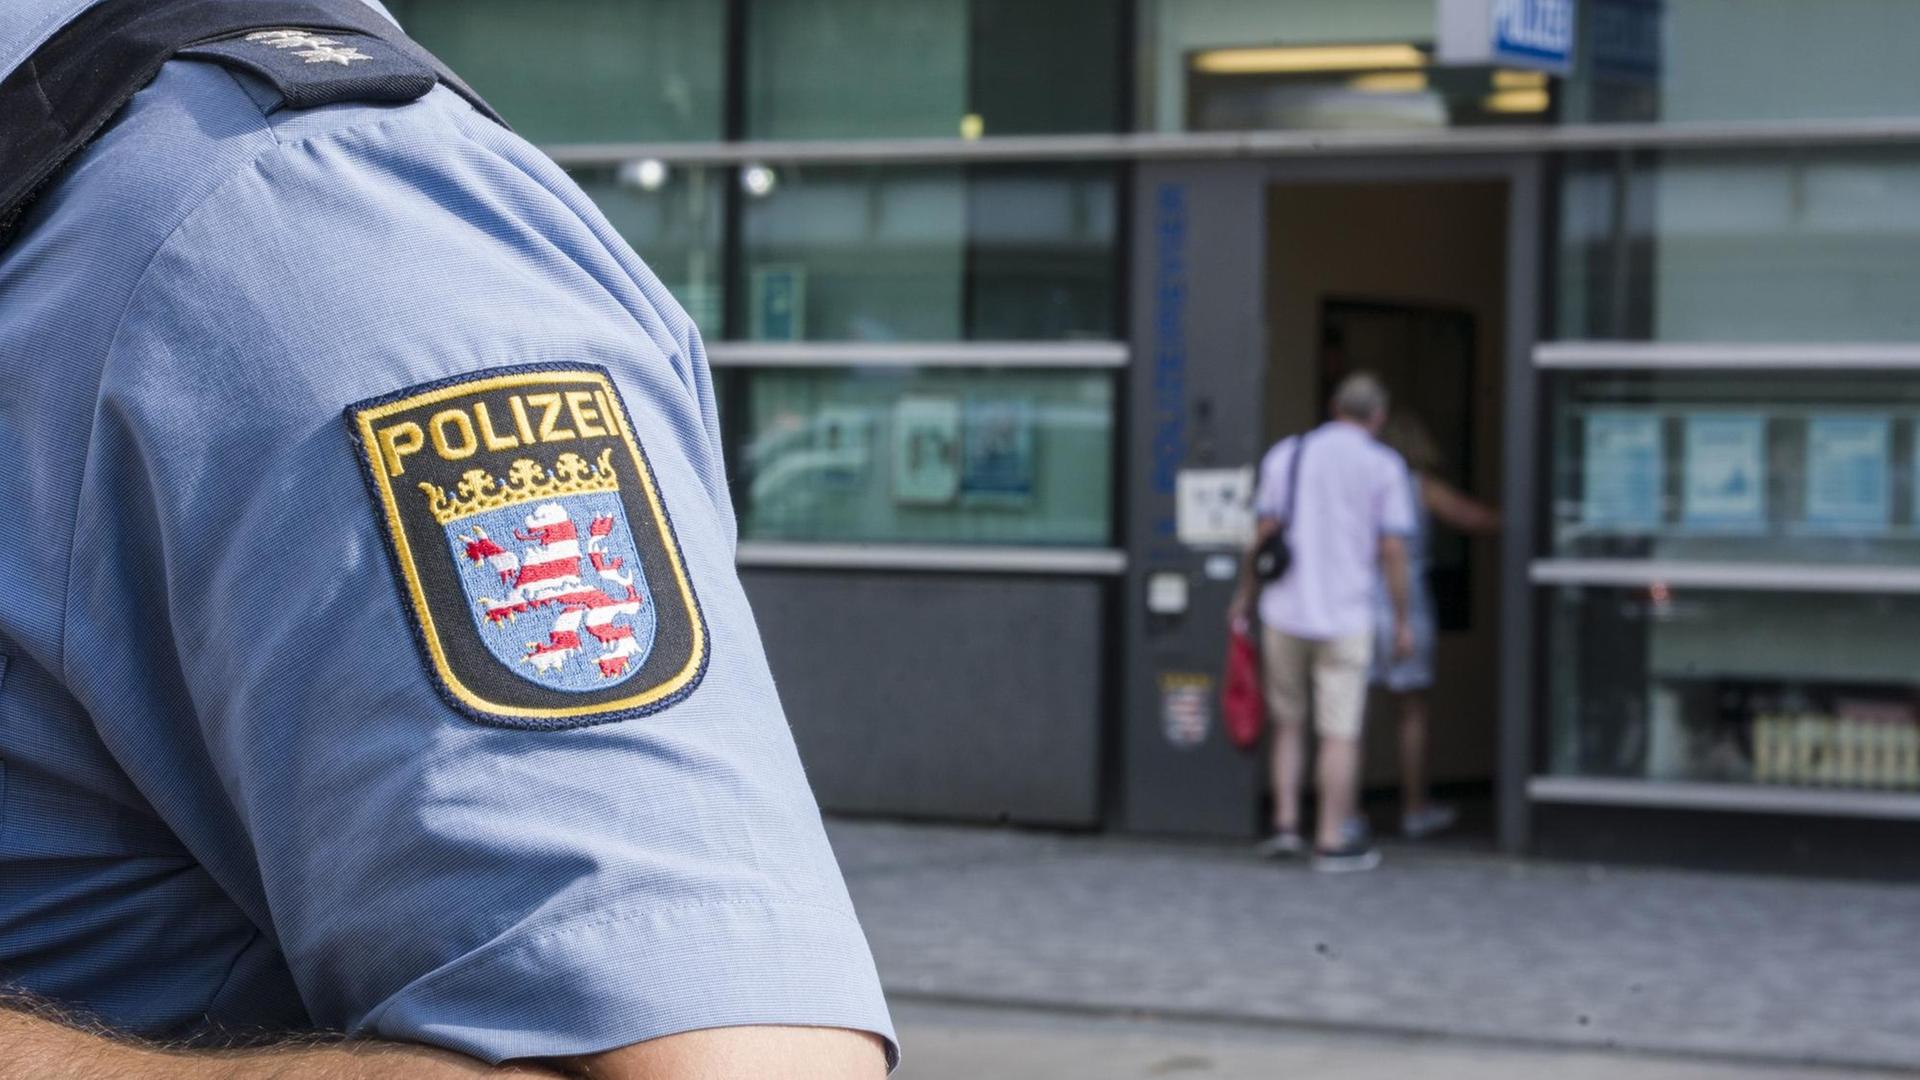 Ärmel eines Polizisten mit dem hessischen Wappen und dem Schriftzug "Polizei"